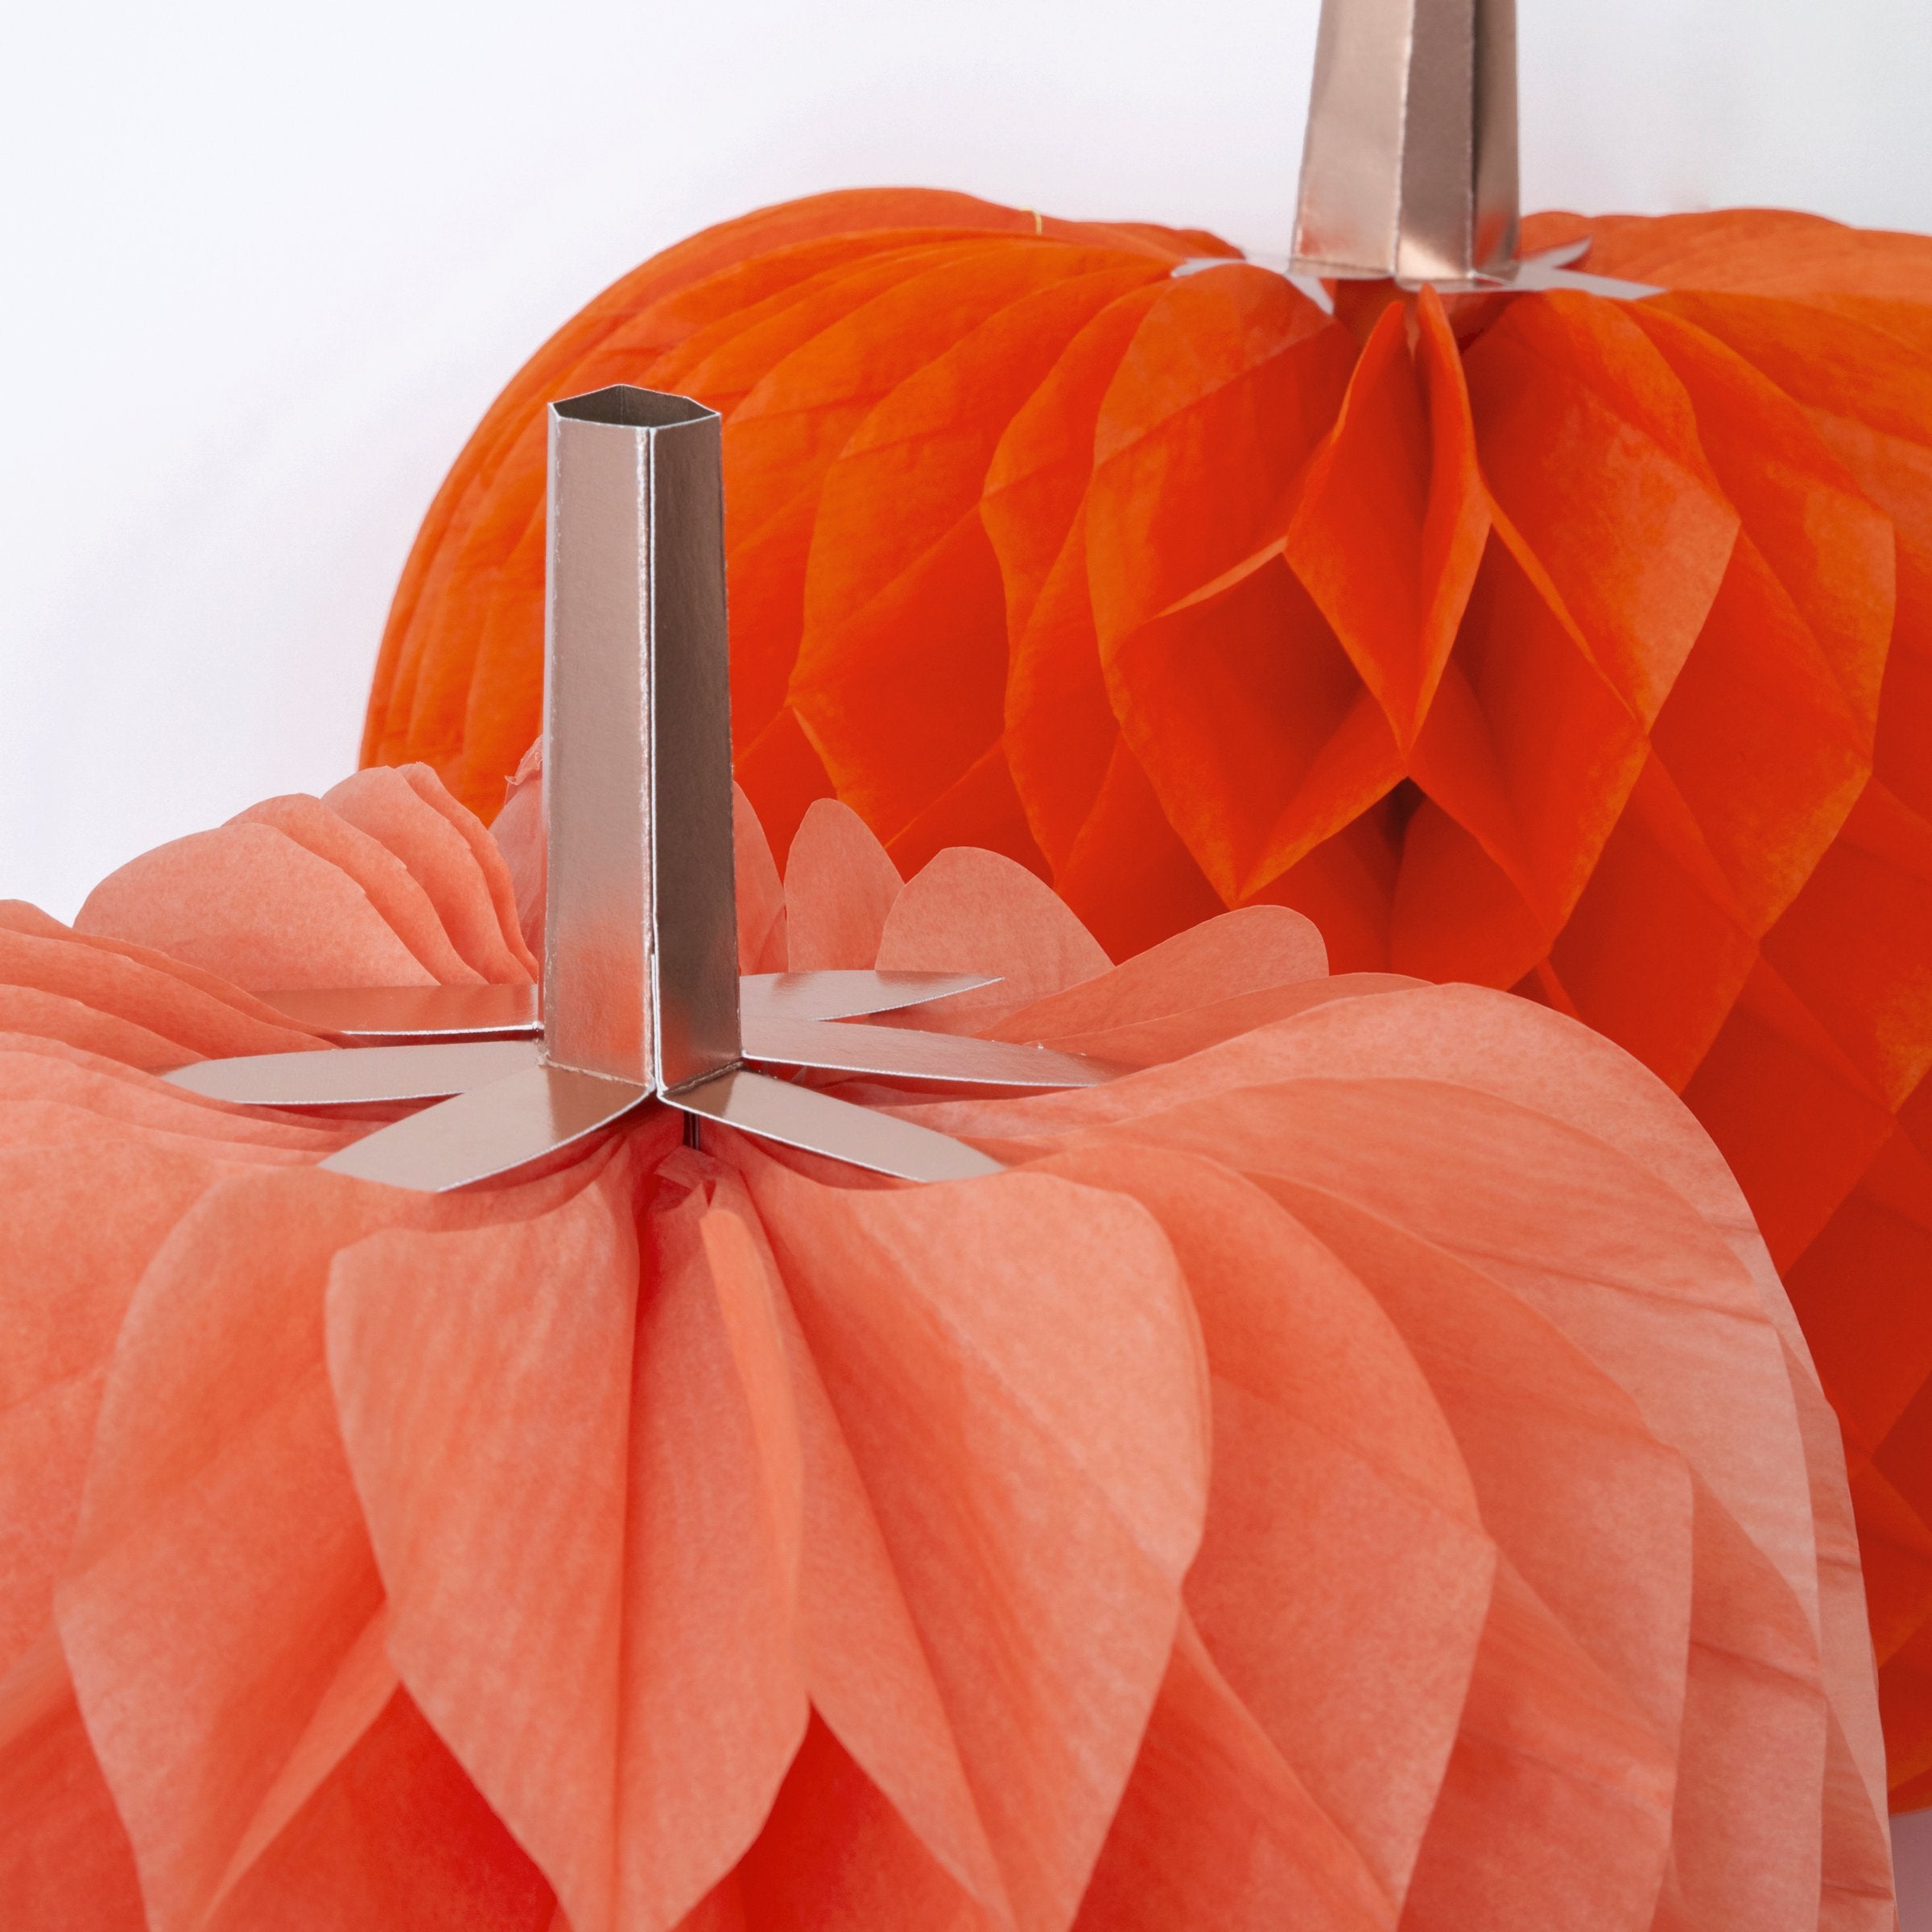 Our paper pumpkins make wonderful Halloween pumpkin decorations.